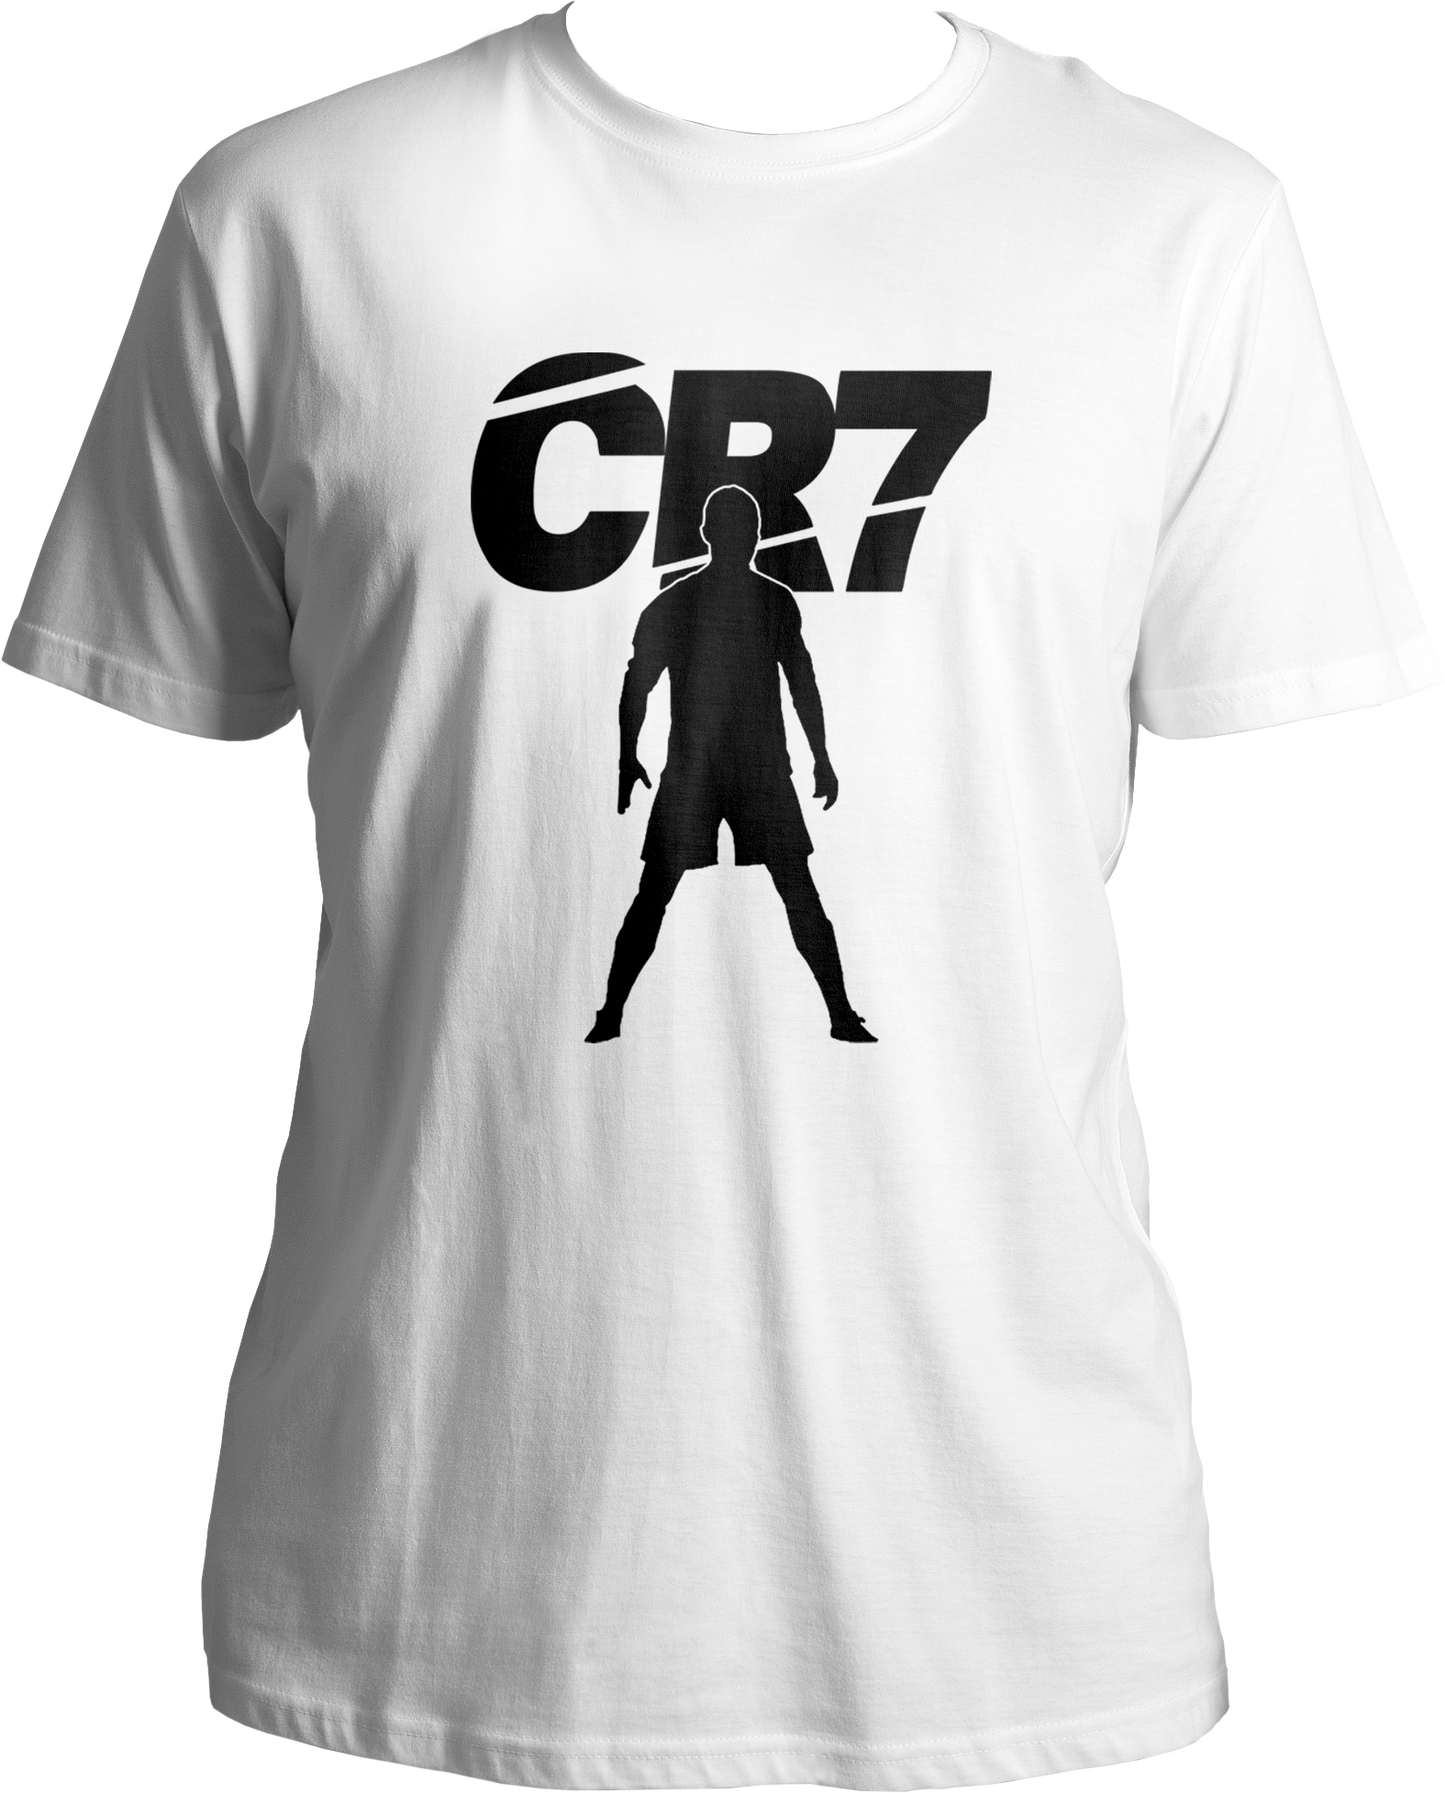 CR-7